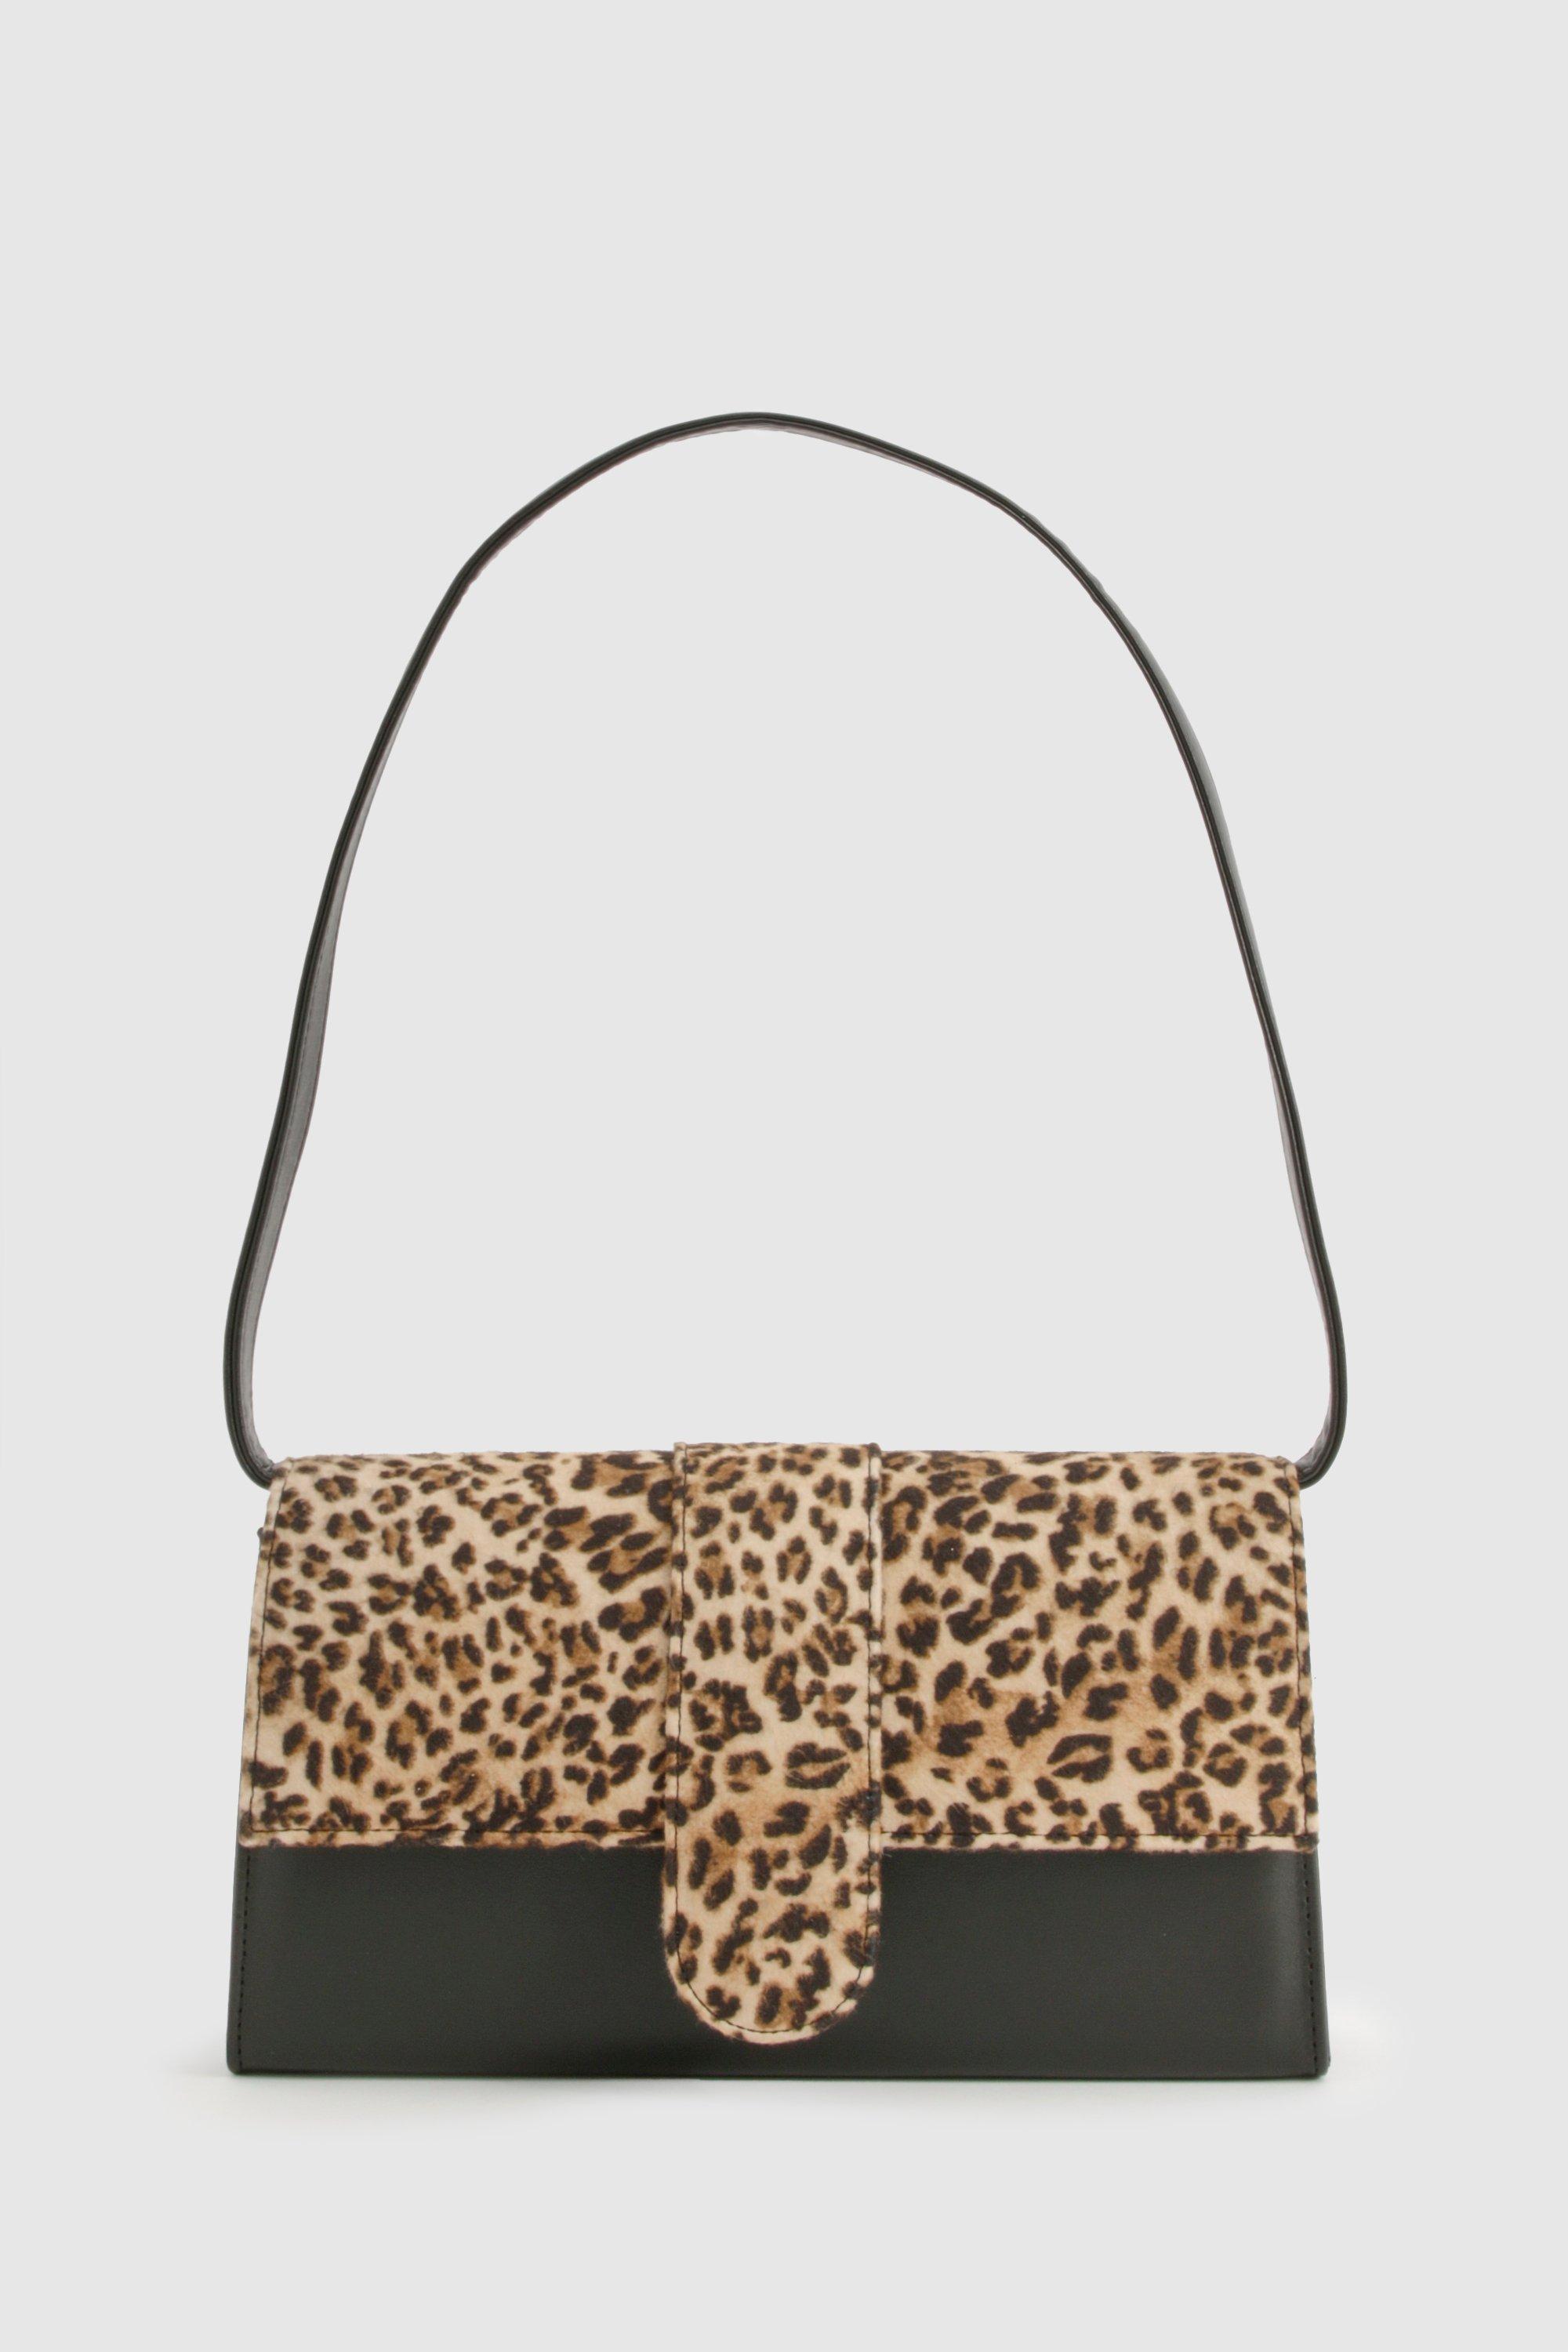 Image of Leopard Print Shoulder Bag, Multi